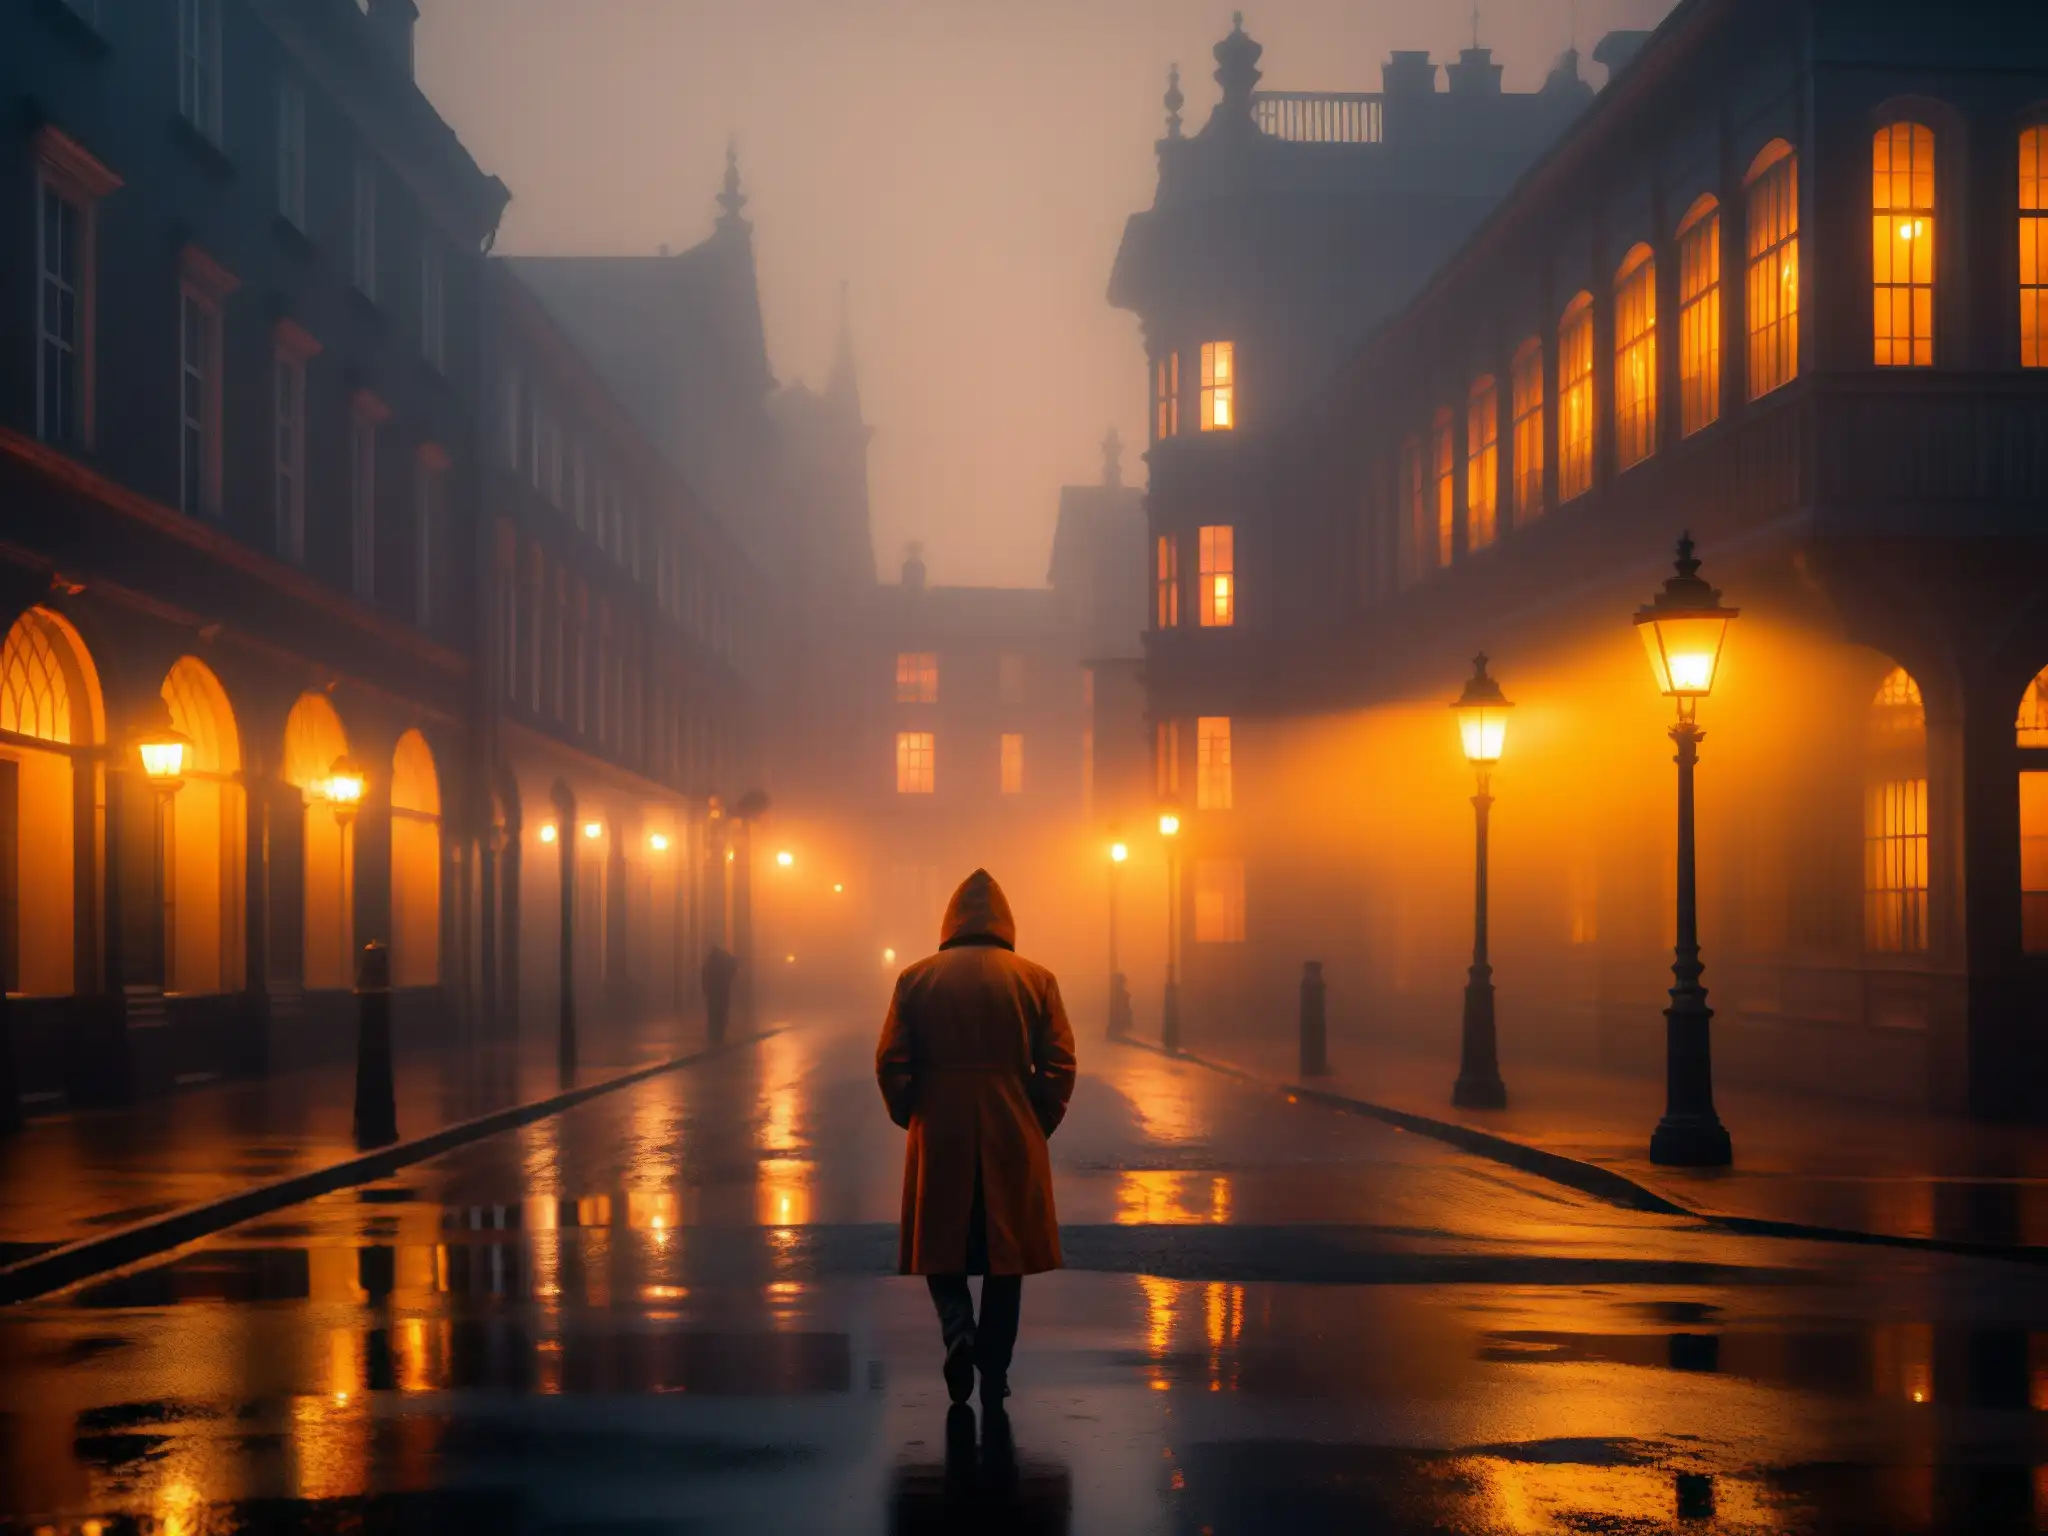 Una calle oscura y neblinosa iluminada por luces anaranjadas, con una figura sombría al acecho